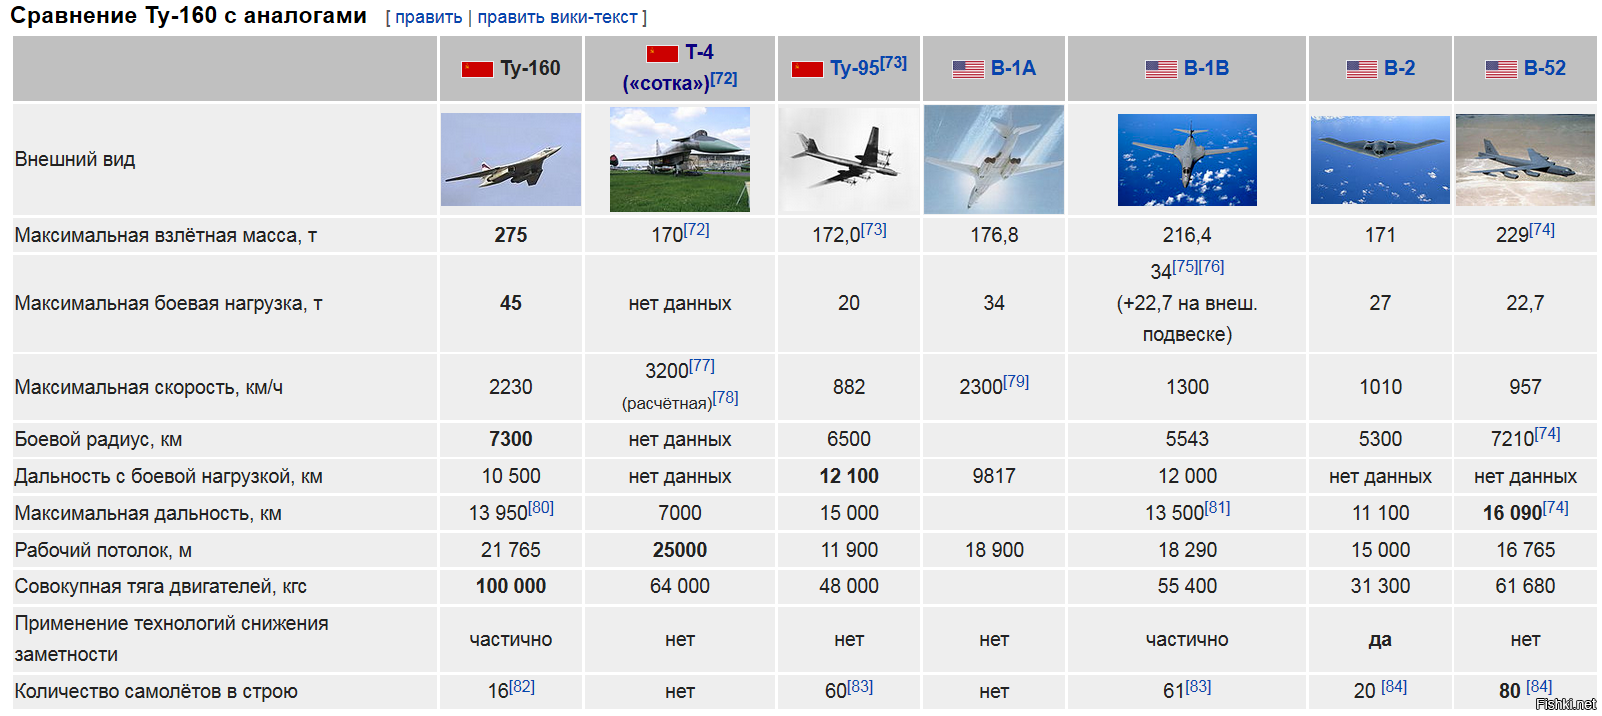 Количество ту 22м3 в россии. Ту 160 м ТТХ самолета. Стратегический бомбардировщик ту-160 ТТХ. Тех характеристики ту 160. Белый лебедь самолет ту 160 характеристики.